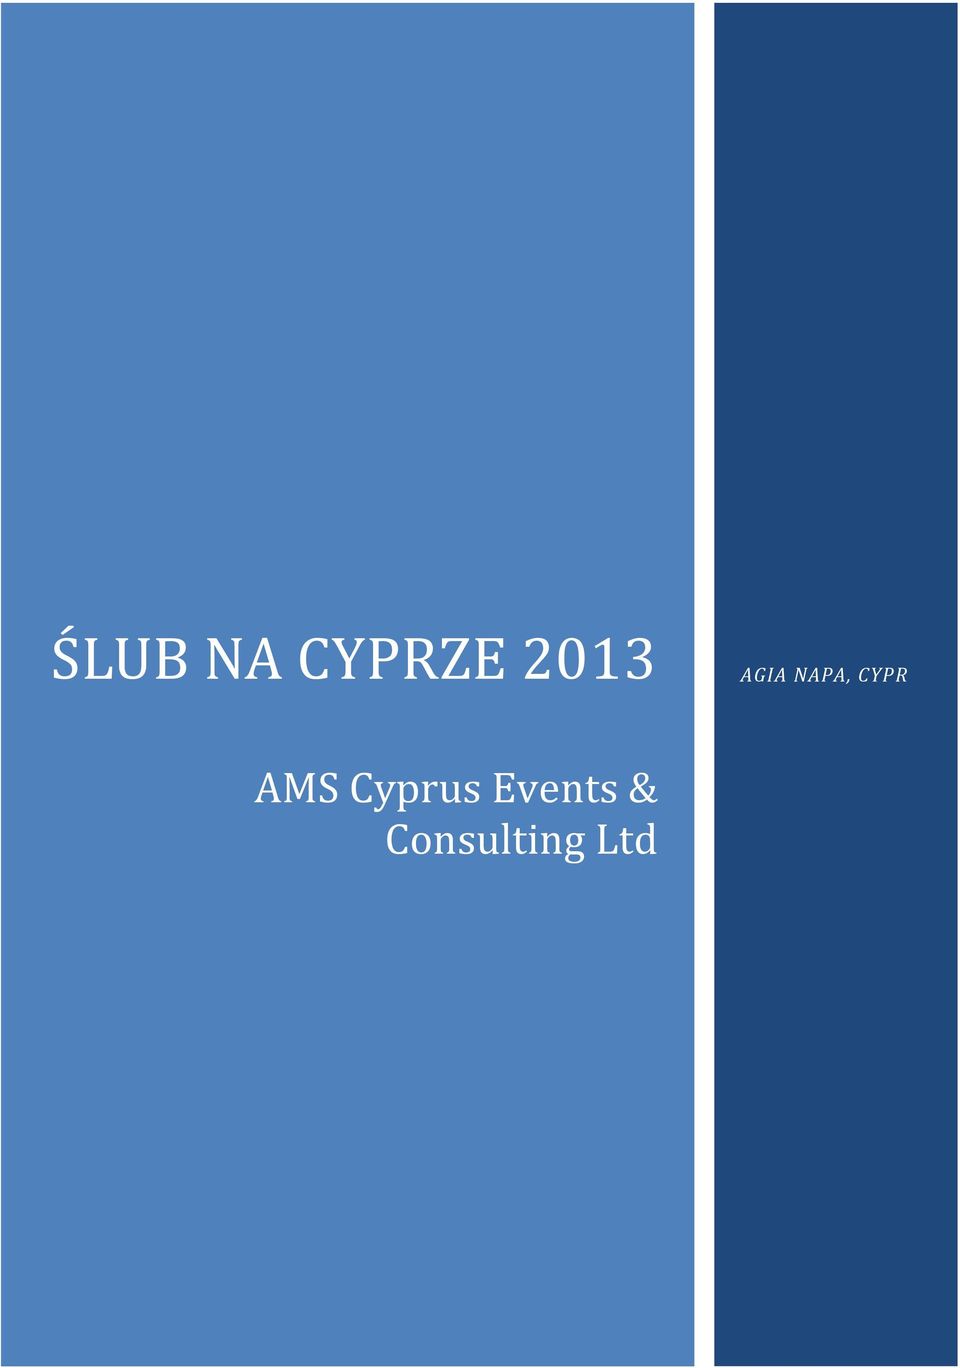 CYPR AMS Cyprus